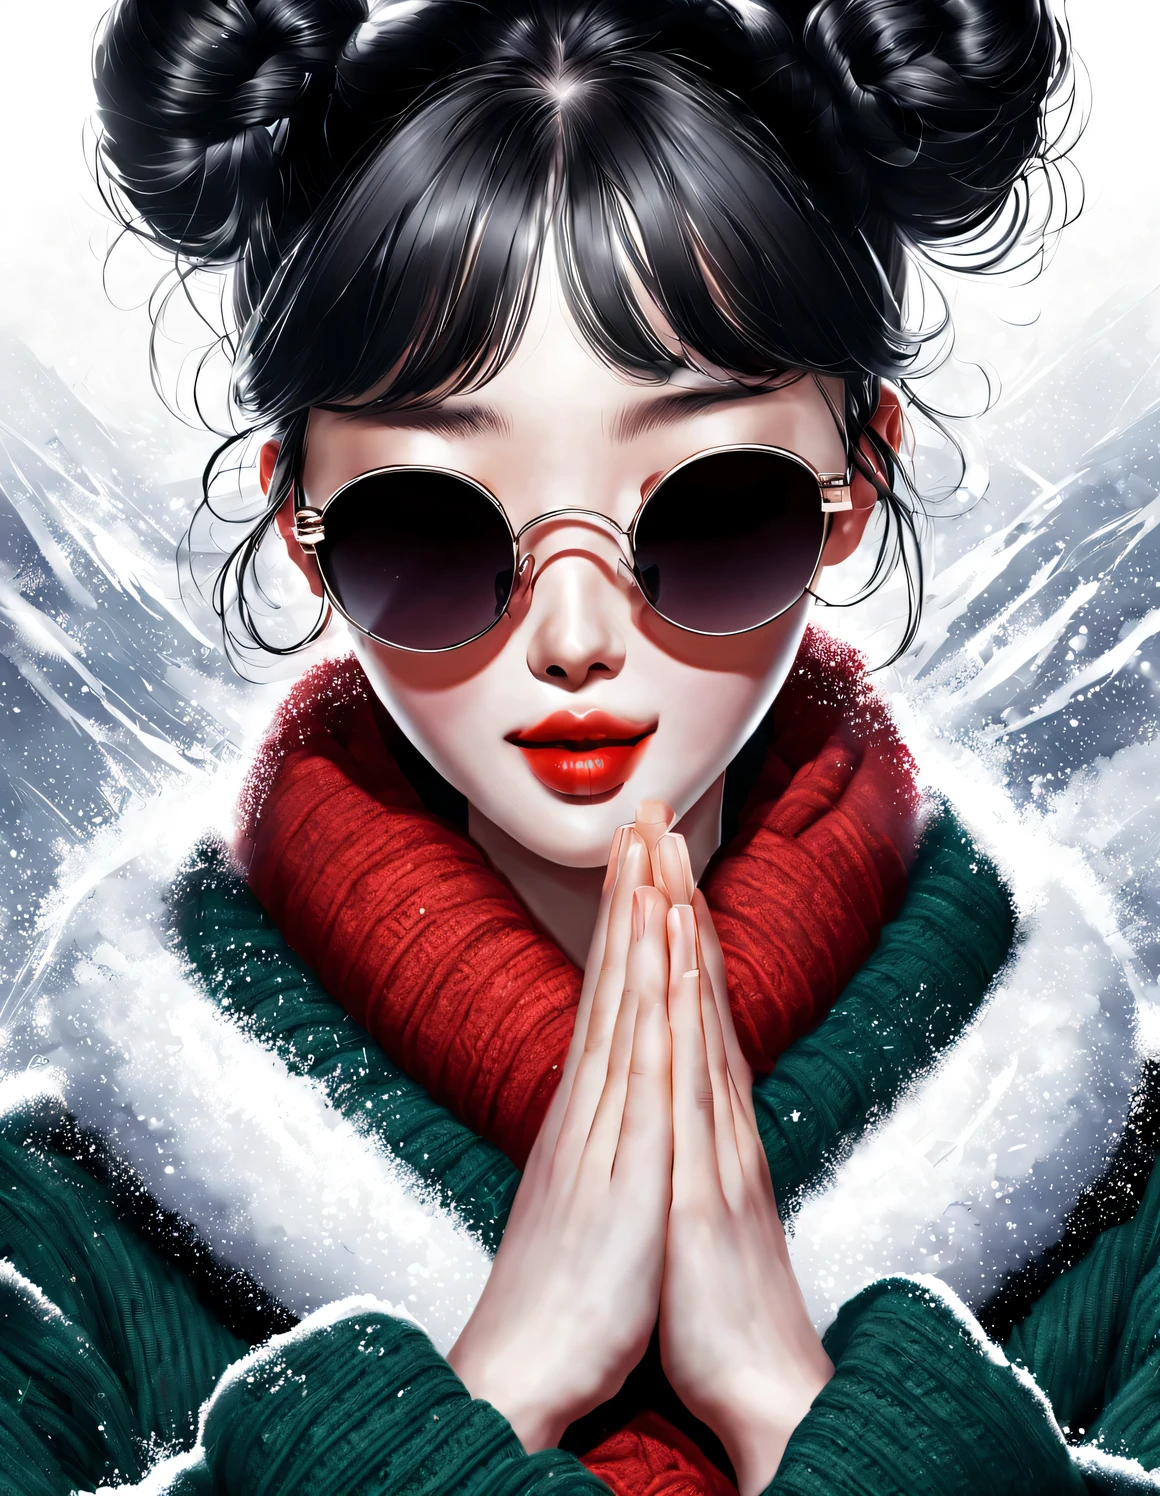 확대，(현대 미술 패션 캐릭터 디자인), 매우 통일된 CG, (半身확대), 떨어지는 눈 배경, 강설량,
(아름다운 중국 여자，온화한 미소로，두 손을 모아 기도하다), (과장된 빨간색 넓은 모직 스카프가 얼굴의 절반을 덮었습니다.: 1.1), (짙은 녹색 스웨터와 재킷: 1.1), (검은 색 선글라스를 착용，머리를 롤빵으로 빗어주세요: 1.2), 클래식과 모던의 조화로운 조화, 소녀의 뽀얗고 결점 없이 매끈한 피부, 높은 콧대, 머리를 든 자세, 슬프면서도 아름답다, 날씬한 몸매, 절묘한 얼굴 특징, 소용돌이 치는 안개 그림, 수묵화, 흑발, 미트볼, 자랑스러운, 초현실주의, 현대 미술 사진, 액션 페인팅 일러스트레이션, 추상 표현주의, 픽사, 피사계 심도, 모션 블러, 백라이트, 방사능, 감소, 헤드업 각도, 소니 FE 총괄 매니저, 초고화질, 걸작, 정확한, 질감 있는 피부, 슈퍼 디테일, 높은 디테일, 고품질, 수상 경력이 있는, 최고의 품질, 수준, 16,000, 상향식 관점에서 촬영, 흥미로운,